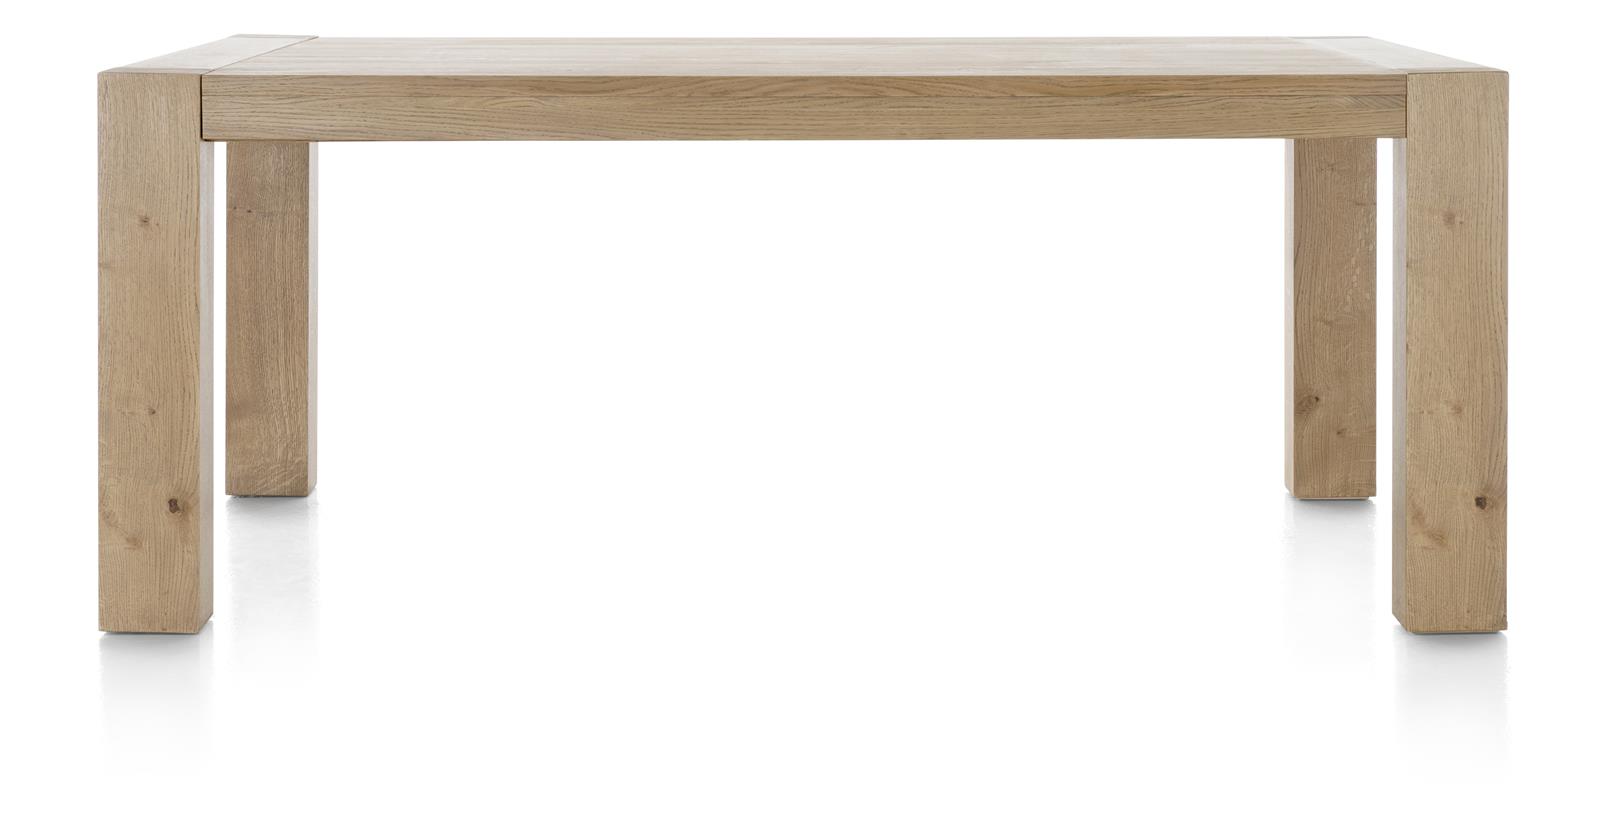 [habufa oak furniture]-[habufa dining furniture]-[furniture village detroit]-160 x 90-Natural White-Against The Grain Furniture